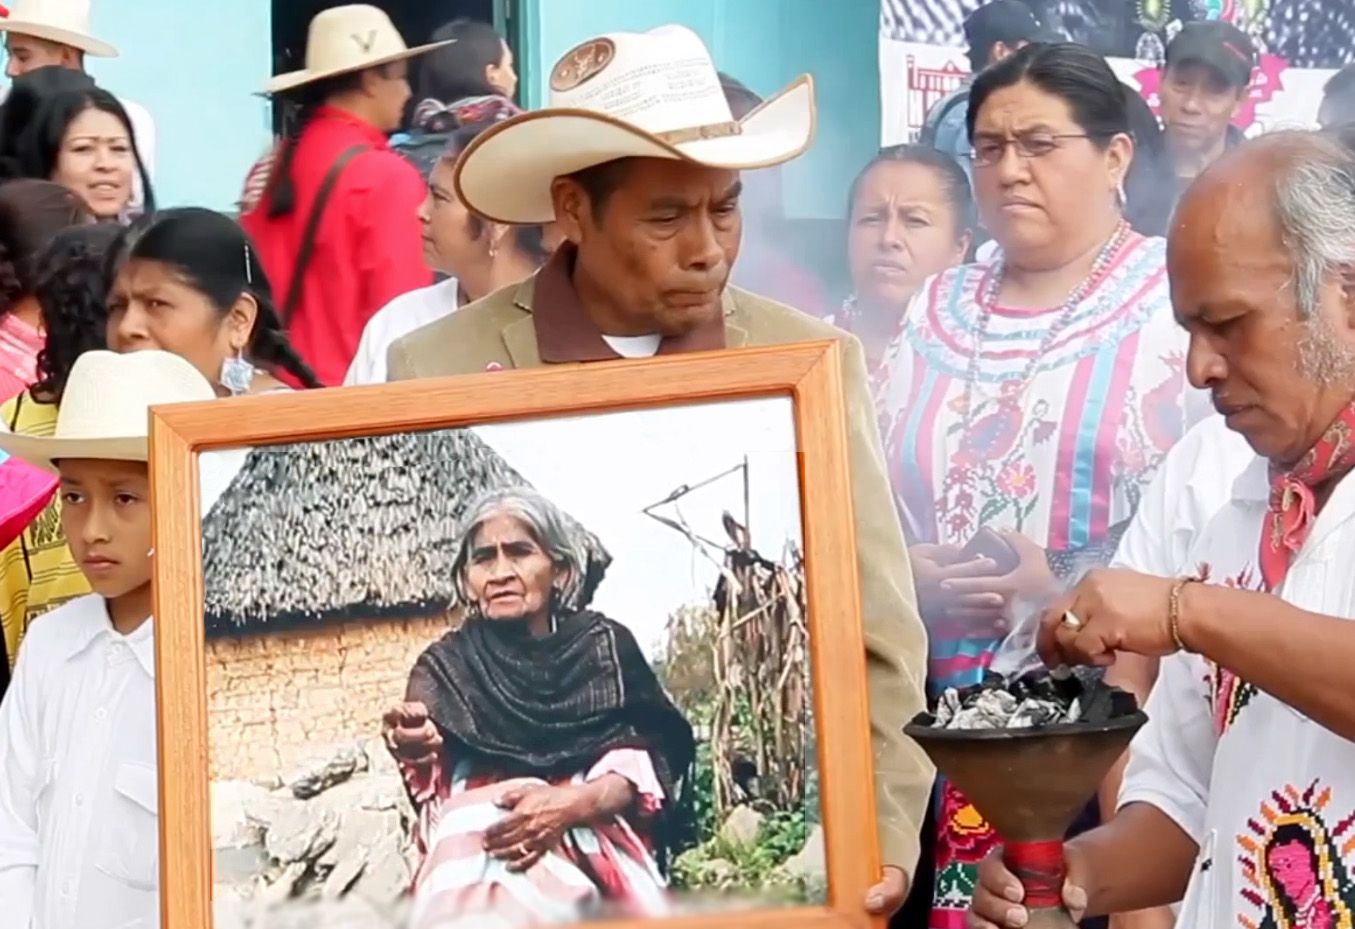 ▶ Realizarán homenaje a María Sabina en Huautla de Jiménez en el 128 aniversario de su natalicio